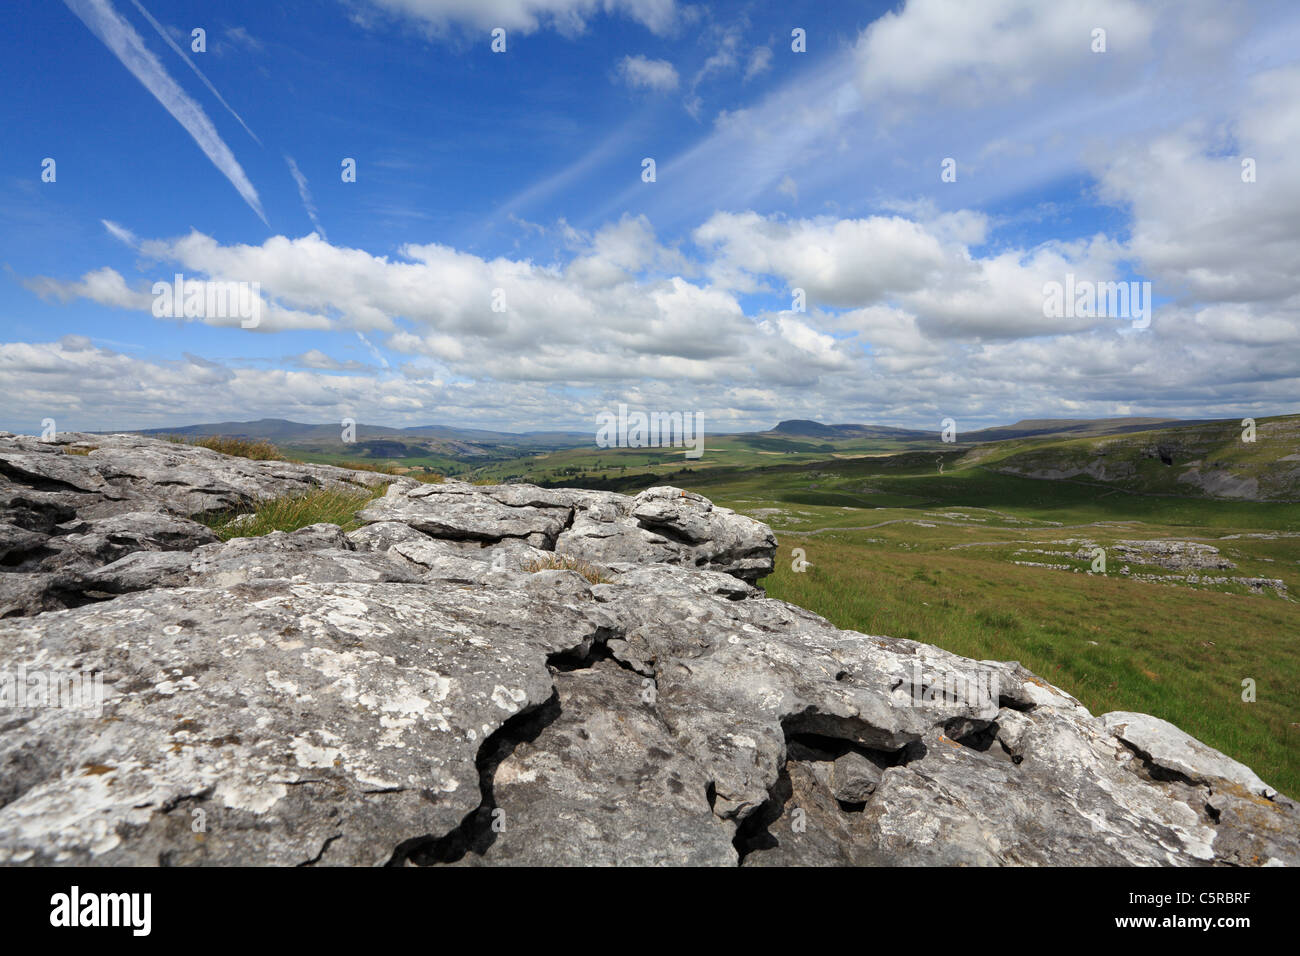 Le tre cime di Yorkshire Dales e la pavimentazione di pietra calcarea. Grotta di Victoria si può notare sulla destra, tutti parte di una famosa gara Foto Stock